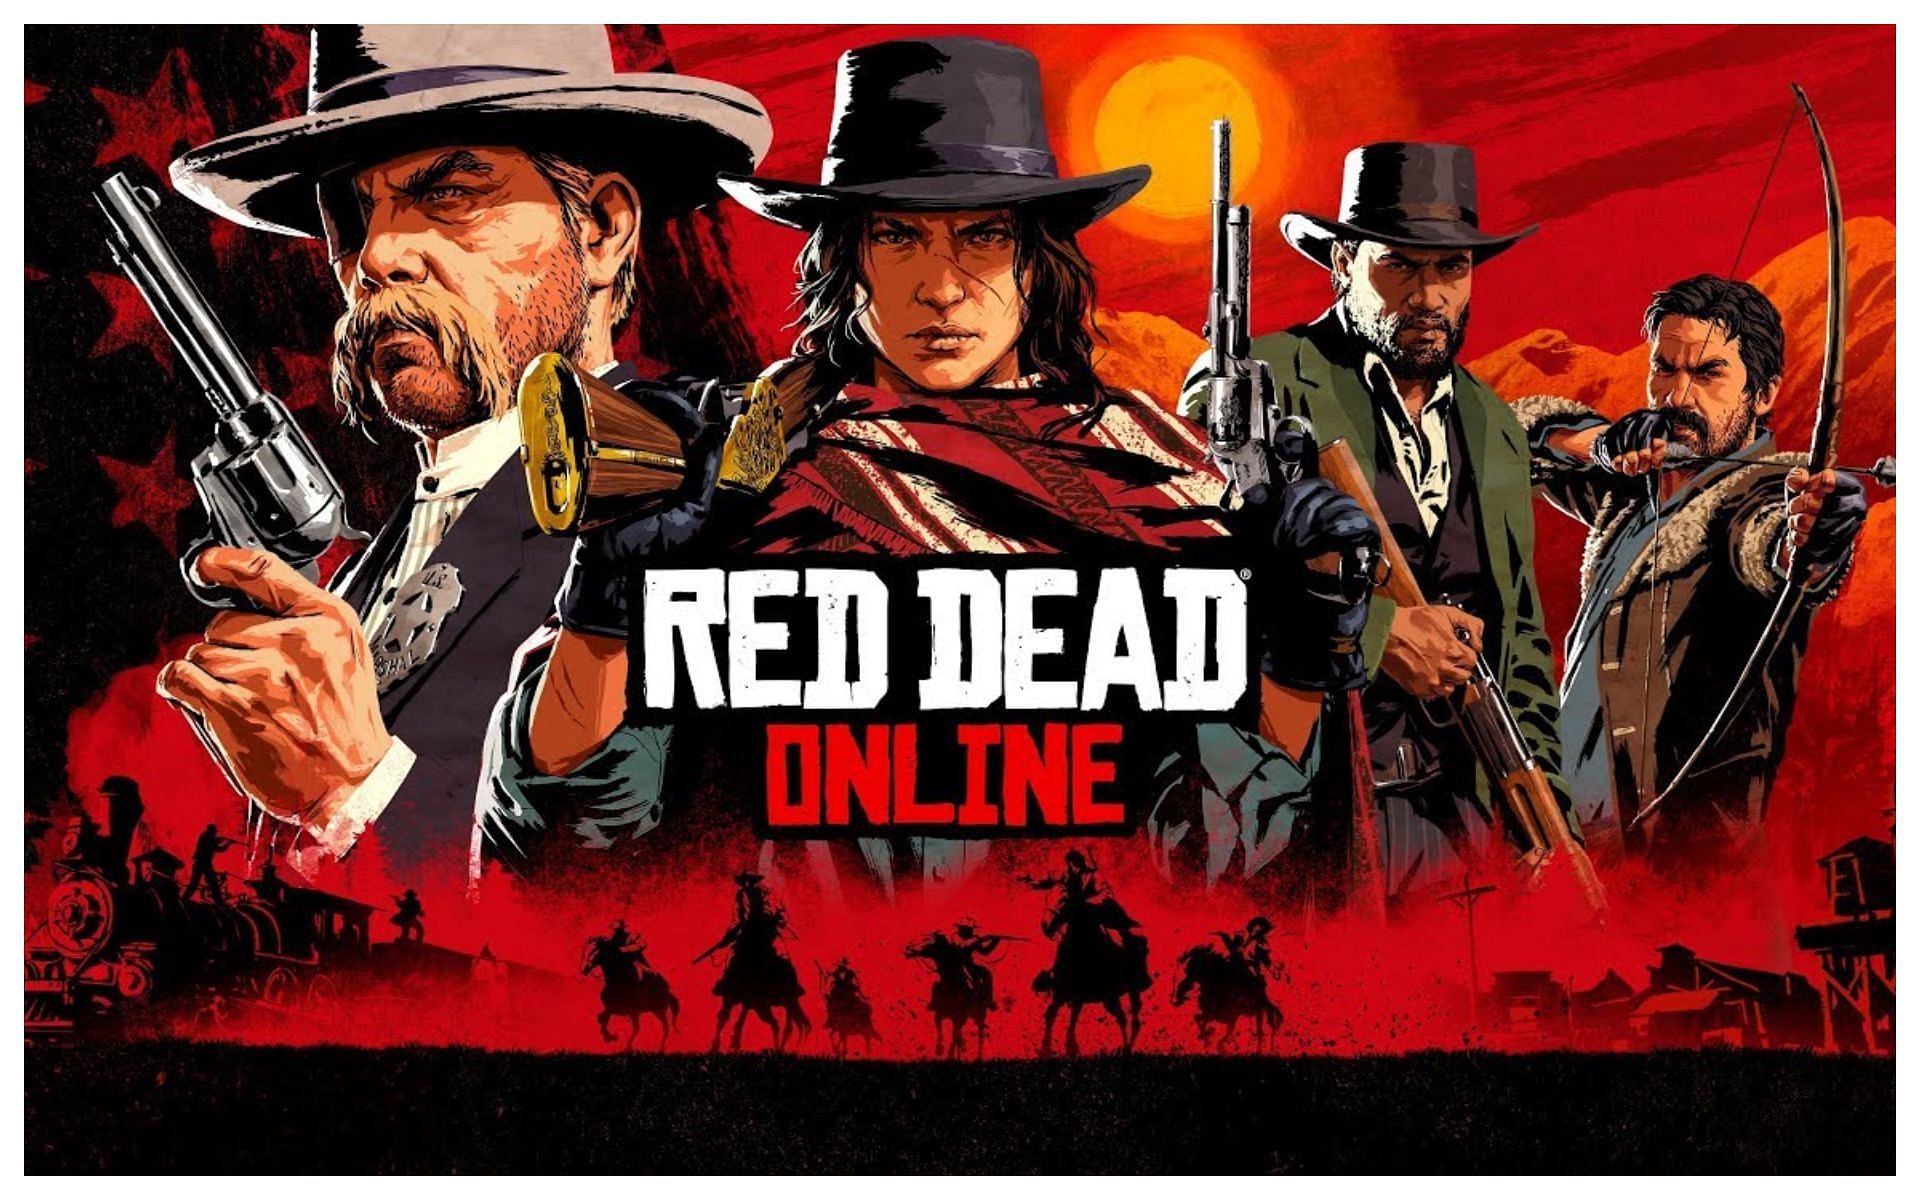 Red Dead Redemption 2 ganha suporte oficial ao AMD FSR 2.0 no patch 1.31  para PC